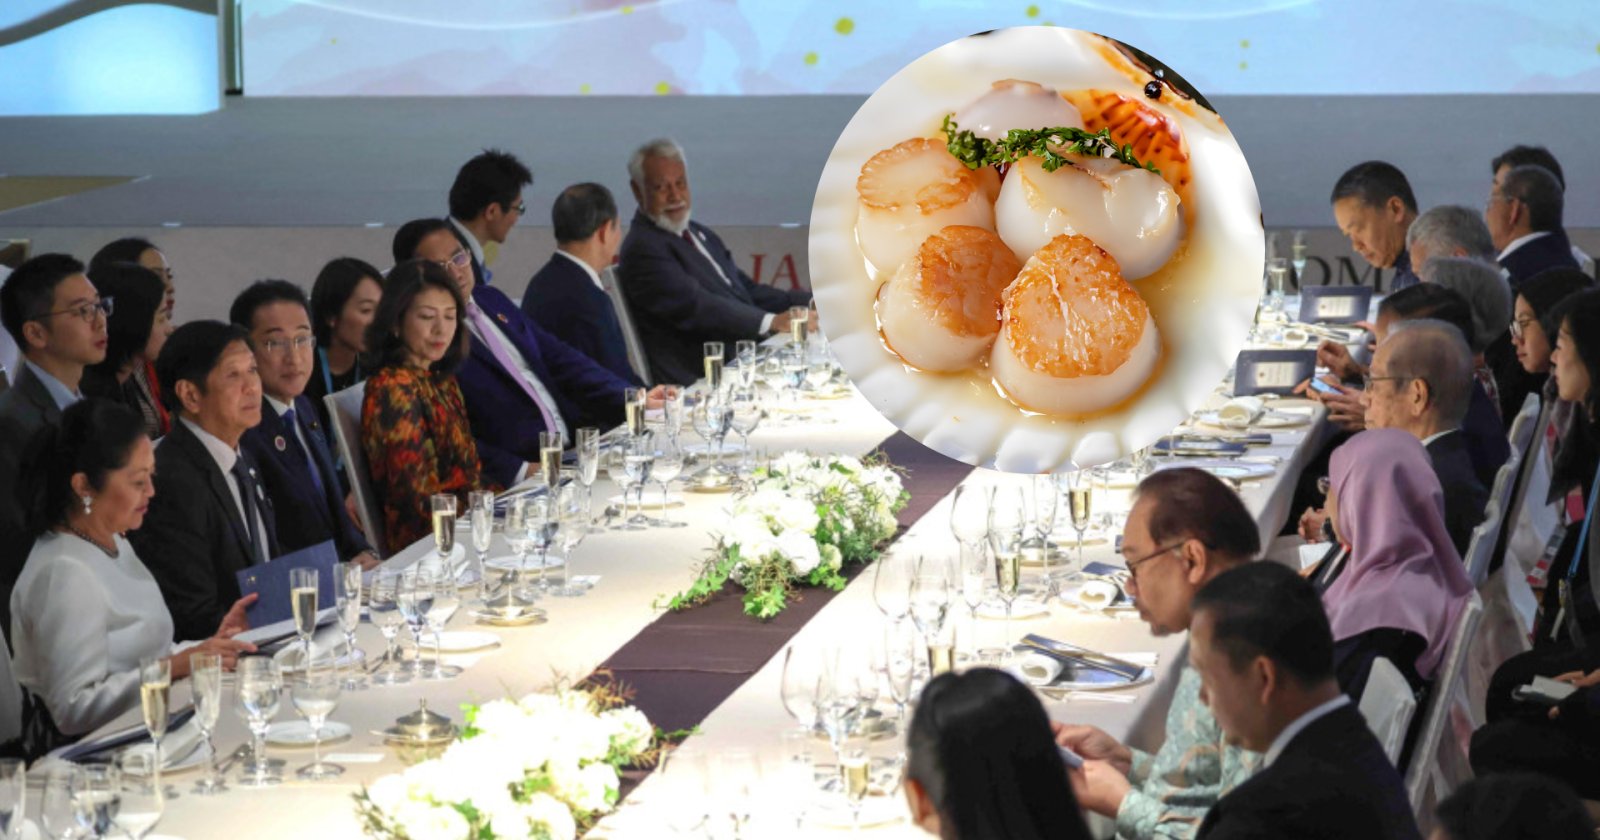 นายกฯ ญี่ปุ่น ใช้หอยเชลล์ญี่ปุ่นเลี้ยงมื้อค่ำผู้นำอาเซียน โต้จีนแบนอาหารทะเล